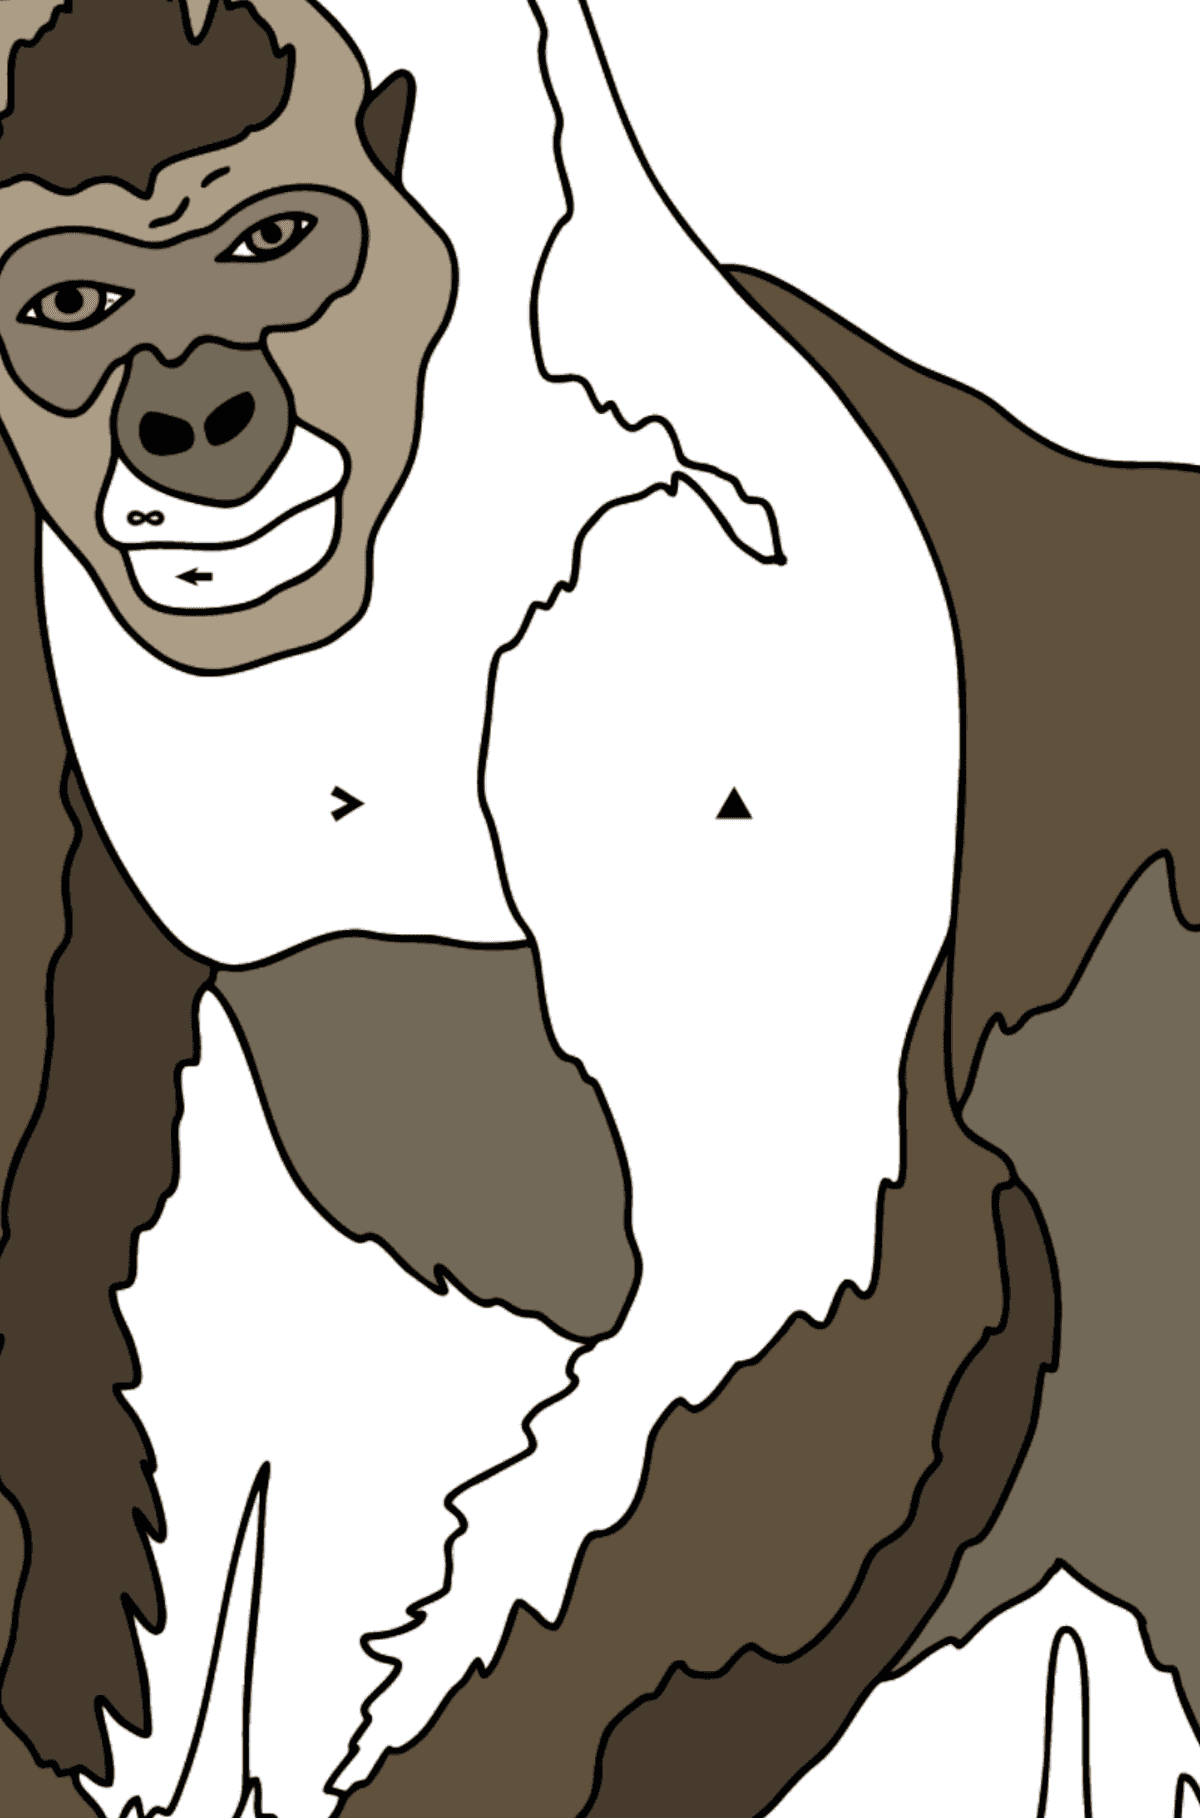 Dibujo para Colorear - Un Gorila Peludo - Colorear por Símbolos para Niños